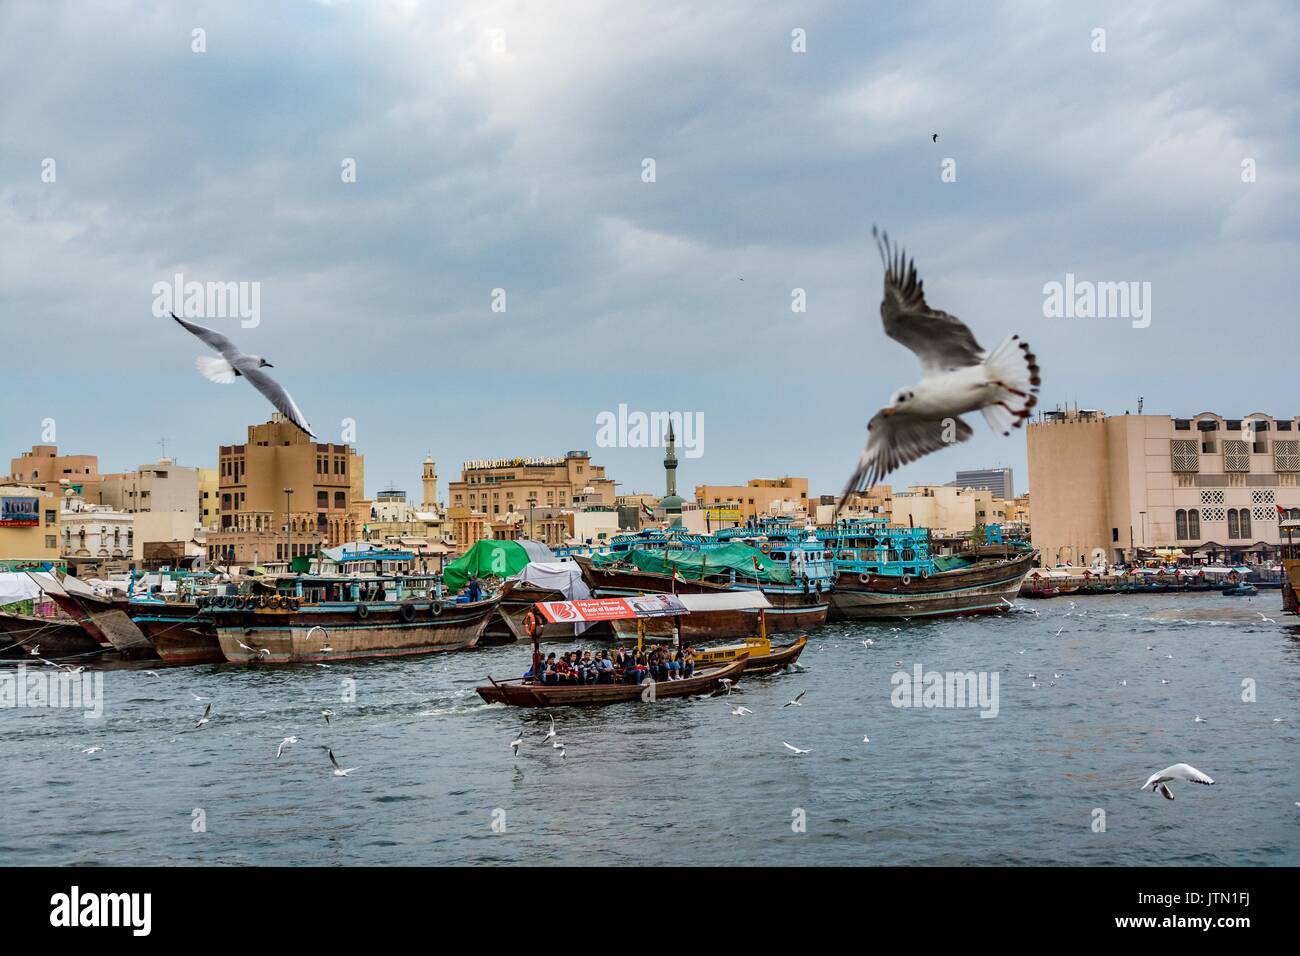 View of Dubai Creek with seagulls and abra boats, Dubai, United Arab Emirates Stock Photo